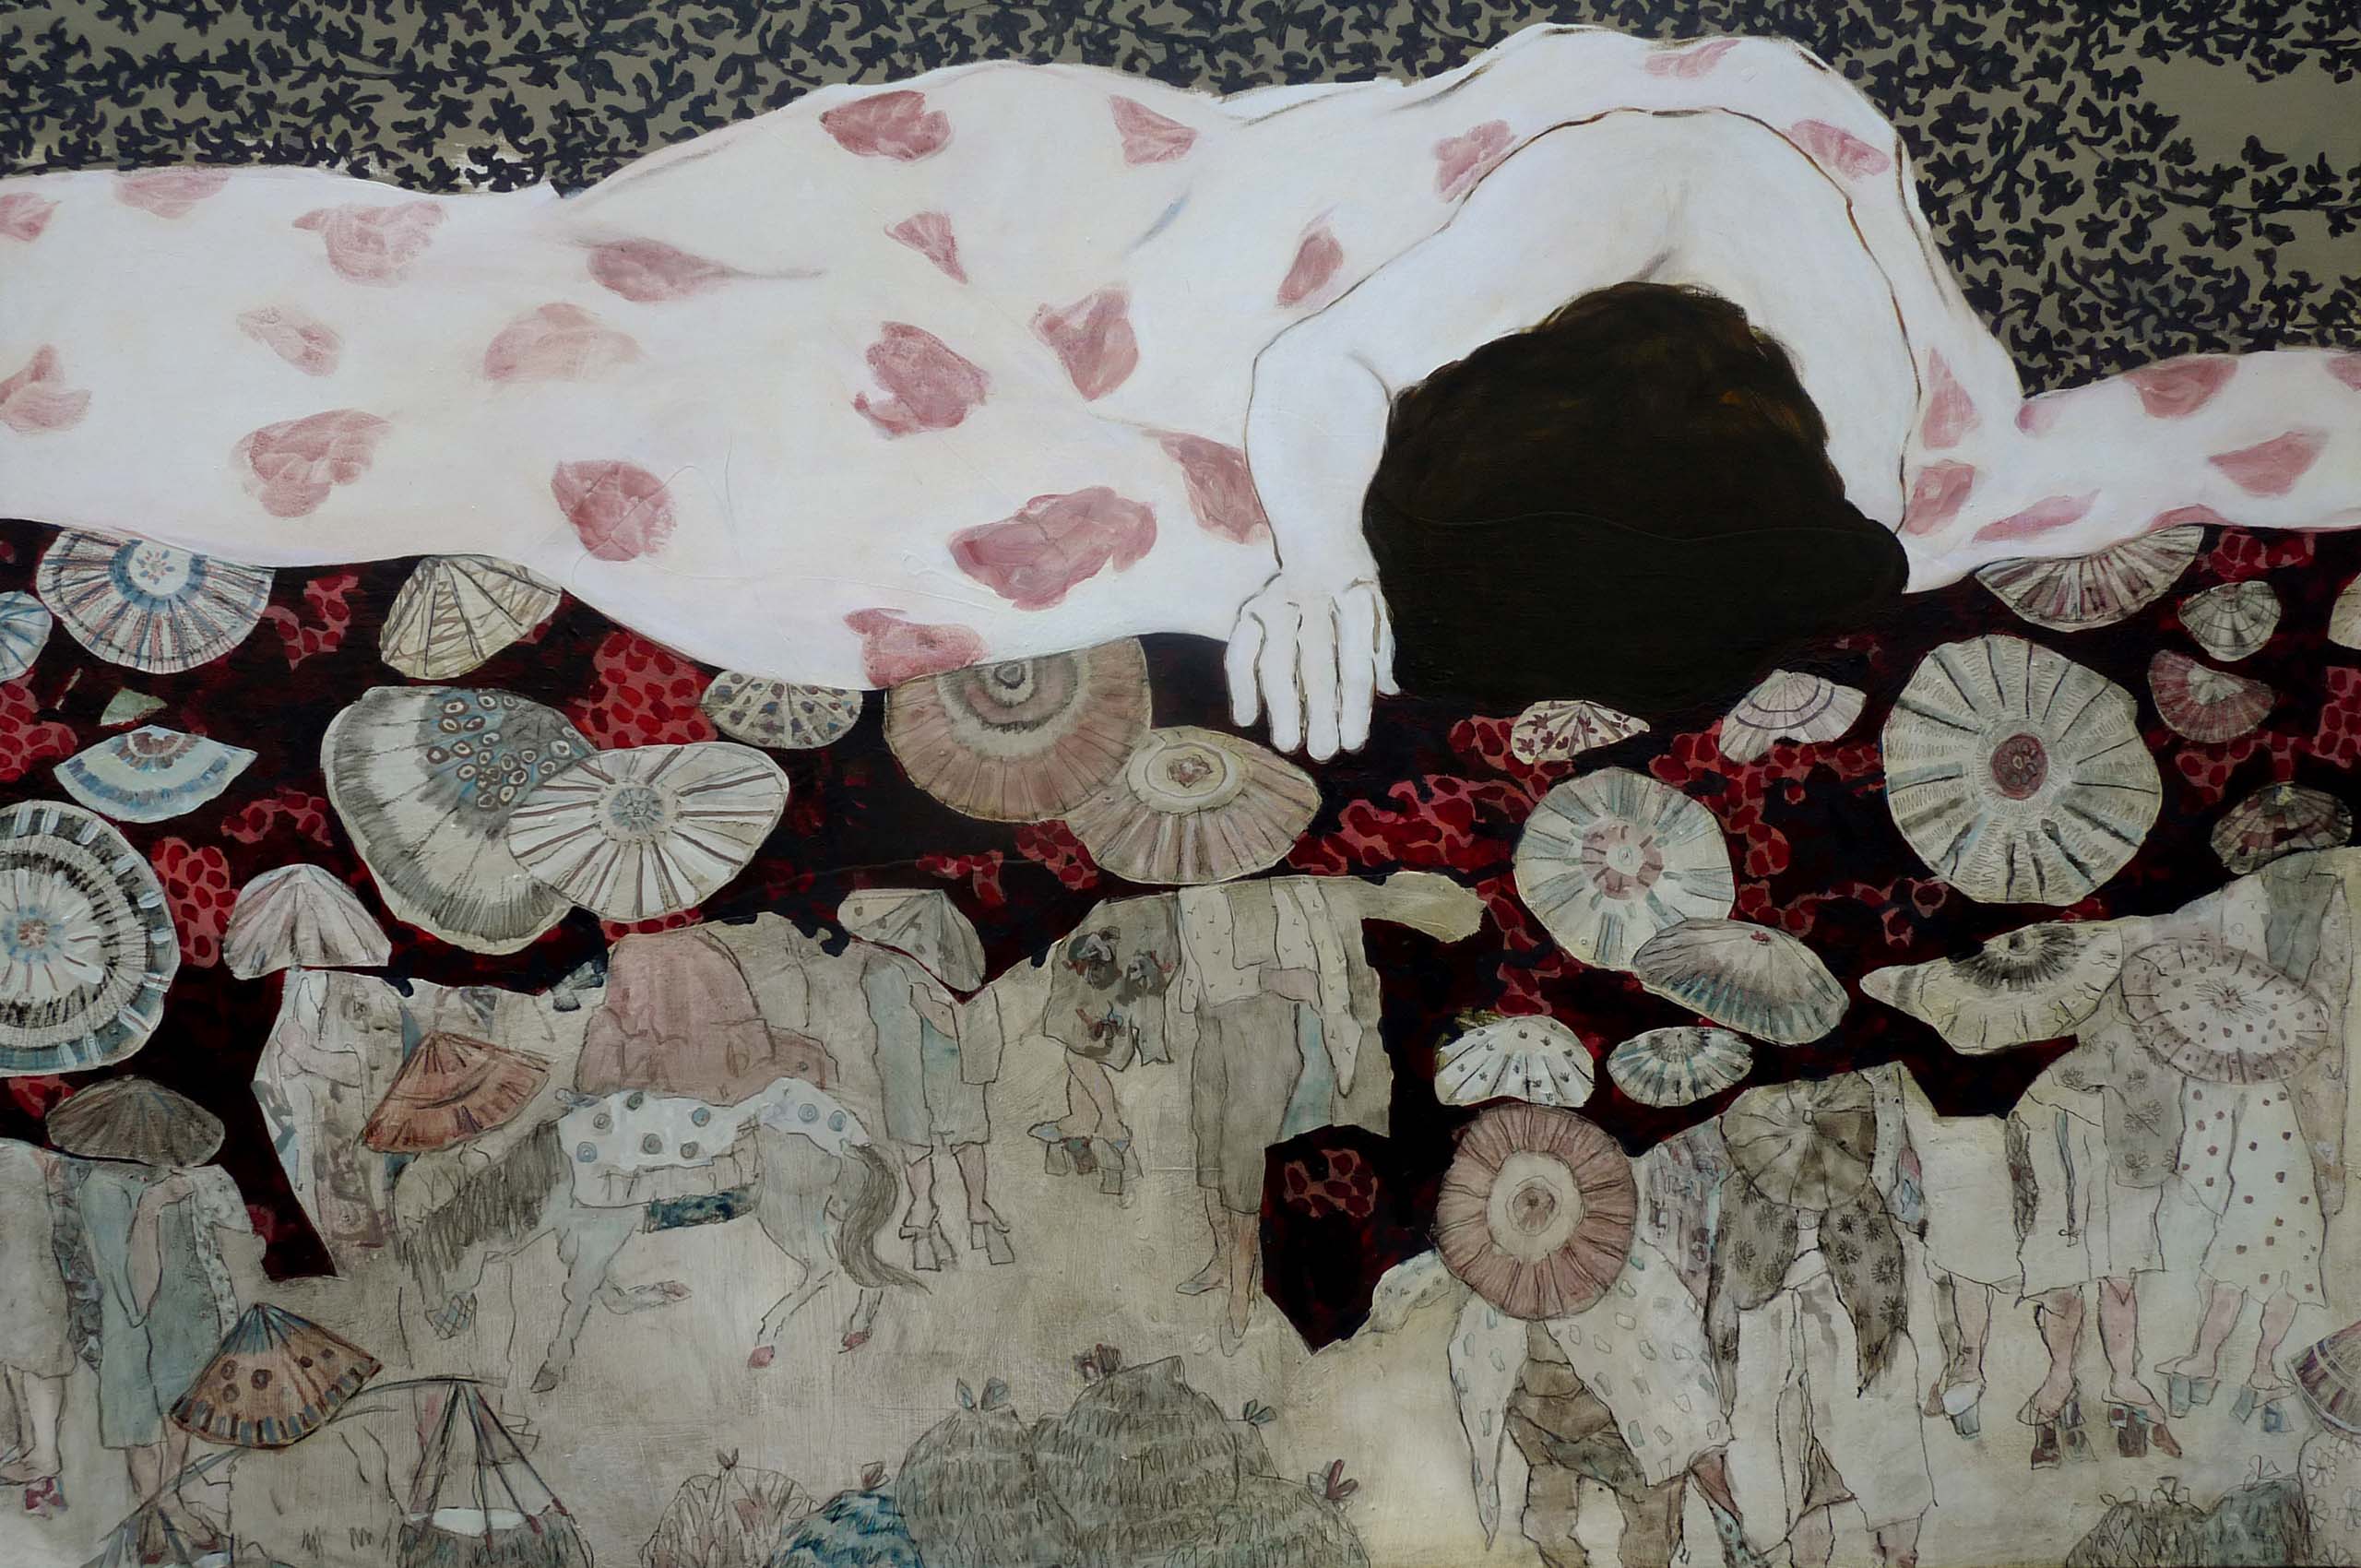 Ayuki, technique mixte sur toile, 150 x 100 cm, 2018, collection particulière